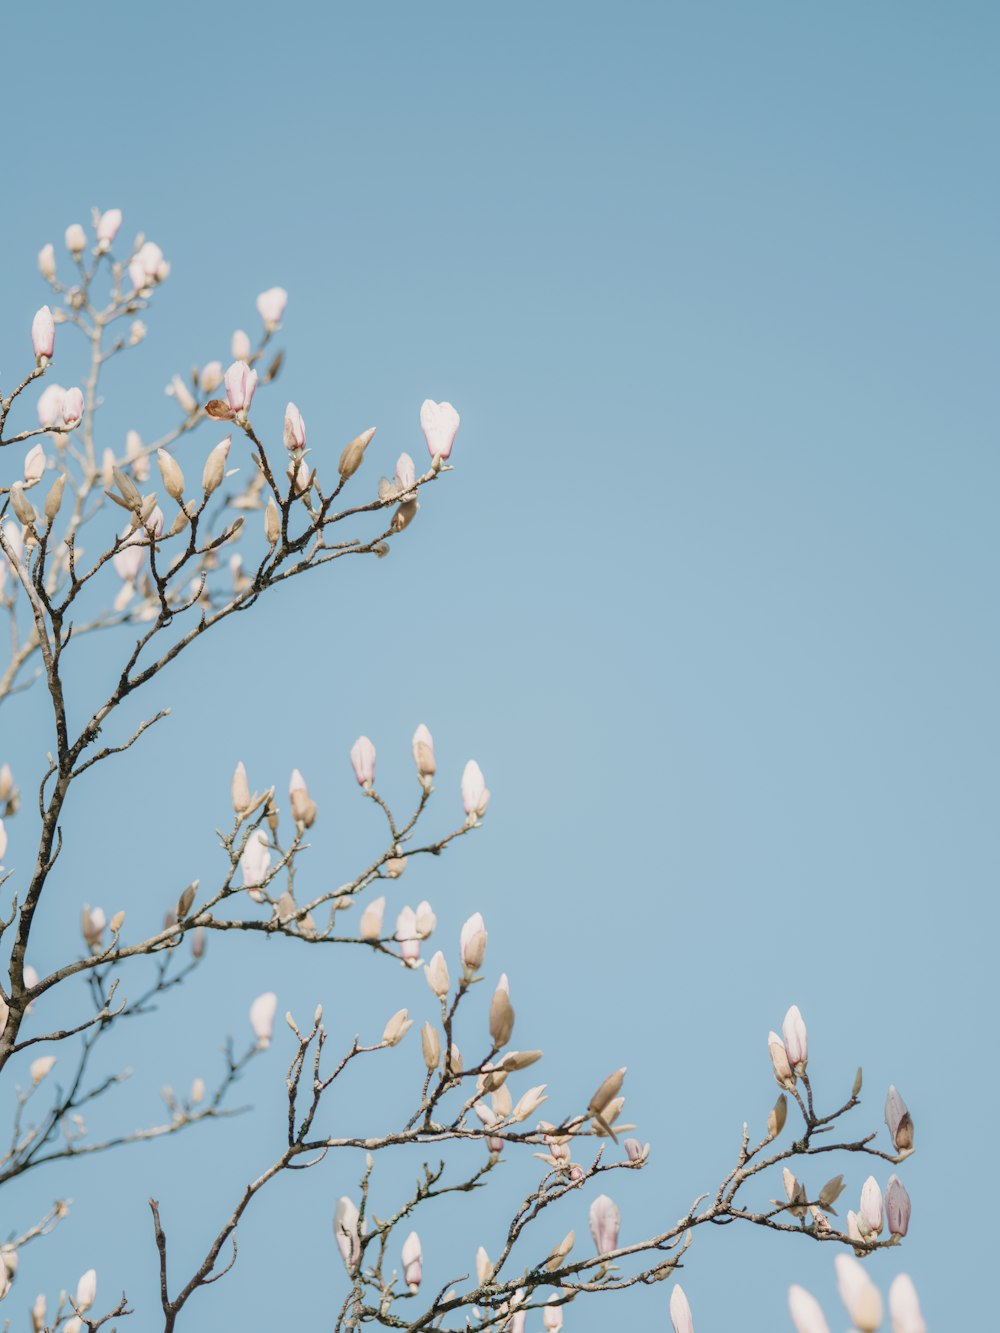 un árbol con flores blancas contra un cielo azul